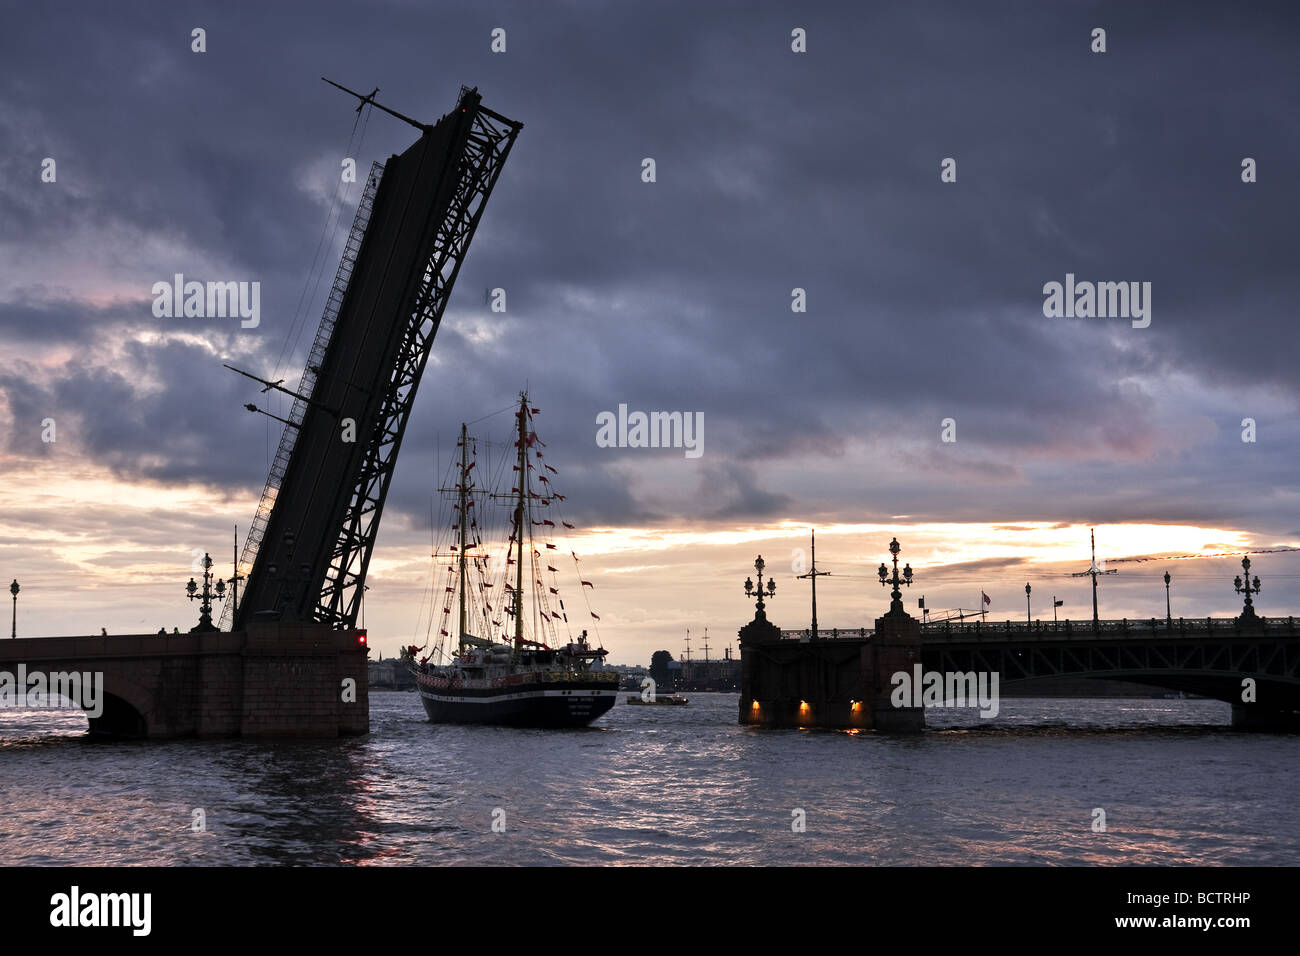 Sailship nuits blanches à St Petersbourg Russie Neva Banque D'Images